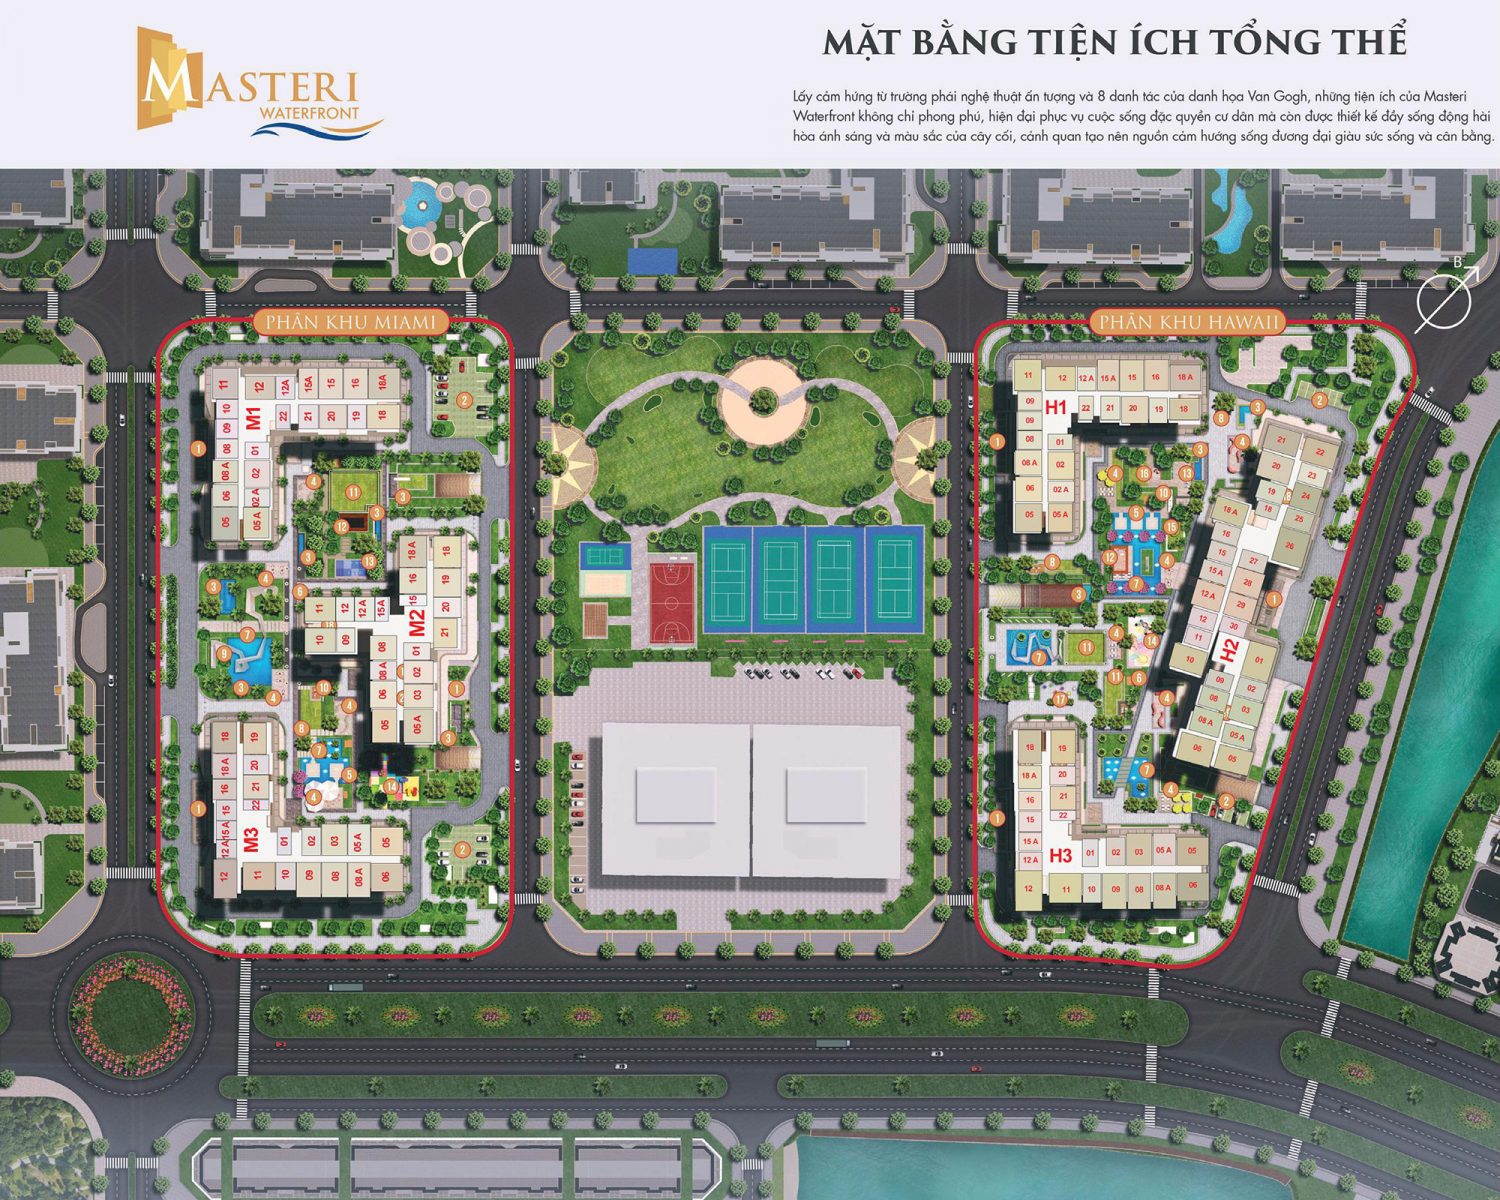 mat-bang-tong-the-masteri-waterfront-1500x1200